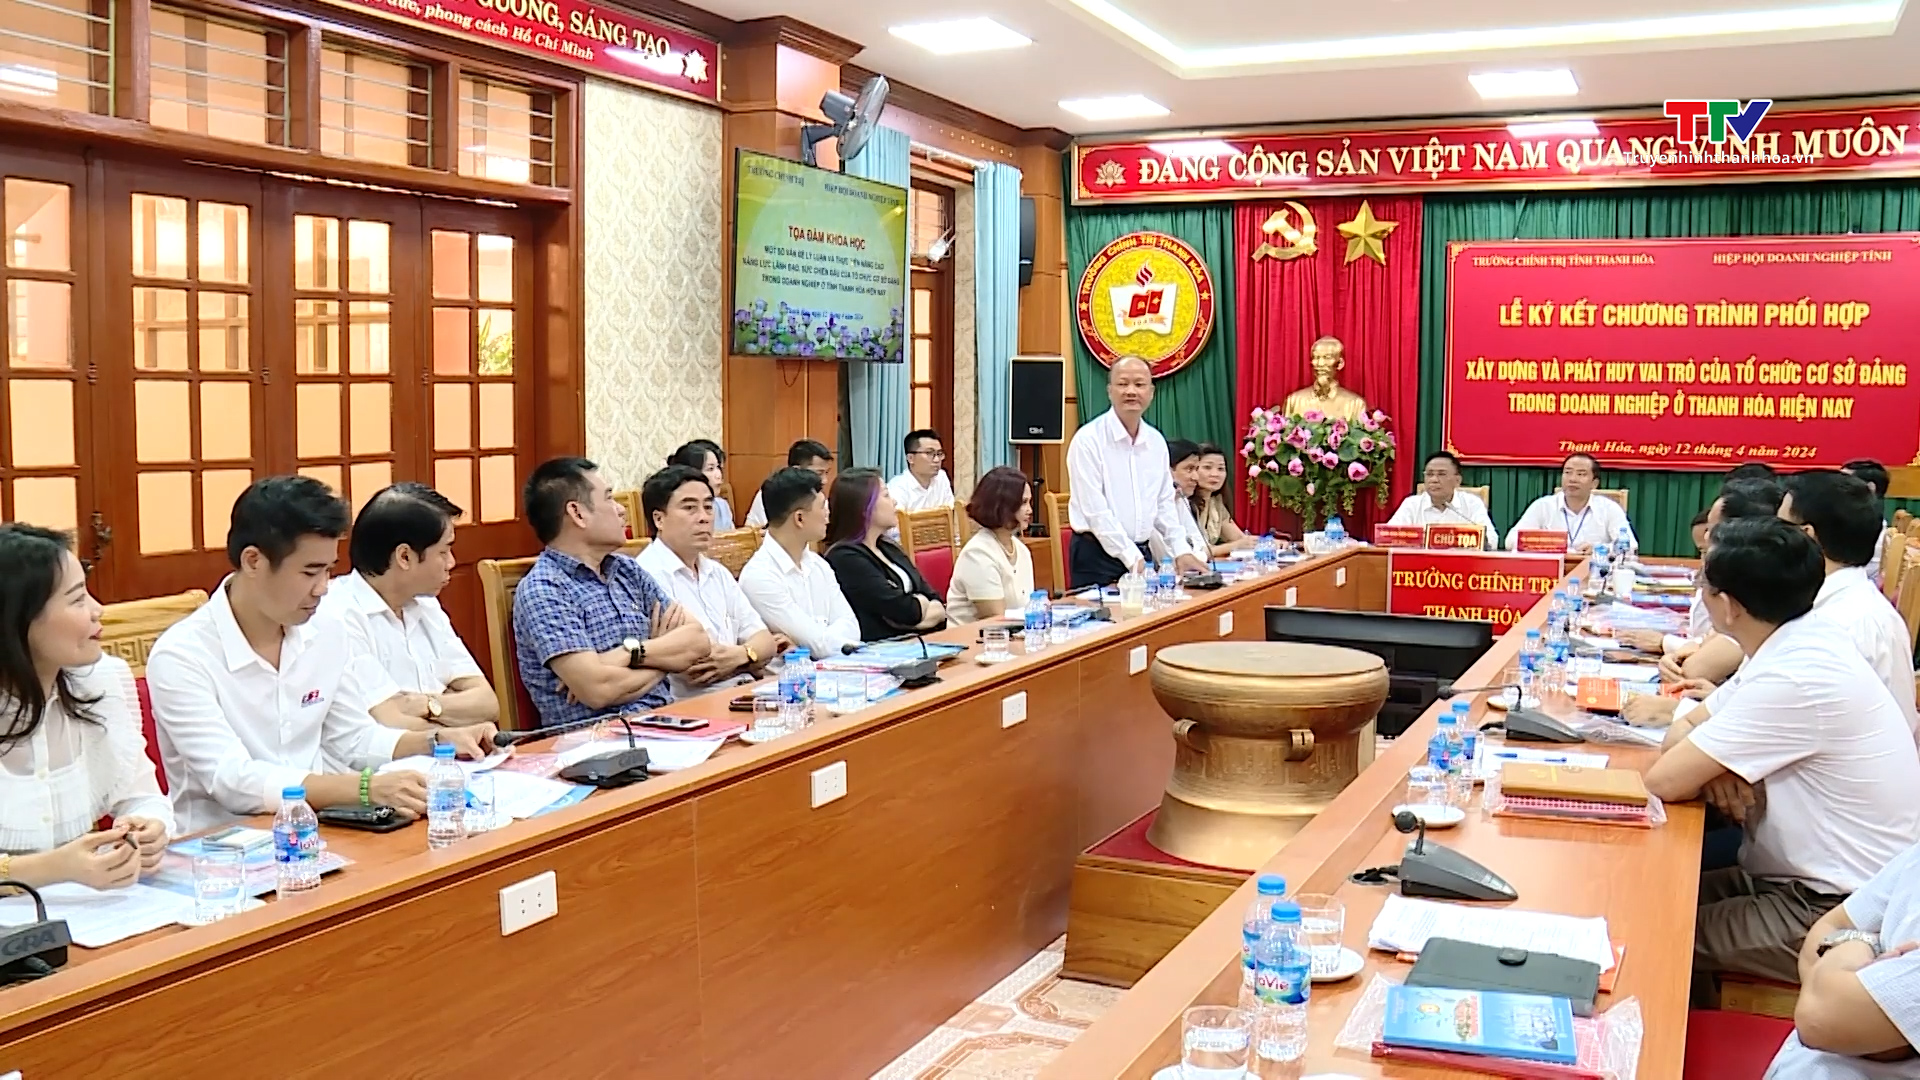 Phát huy vai trò của tổ chức cơ sở đảng trong doanh nghiệp Thanh Hóa- Ảnh 1.